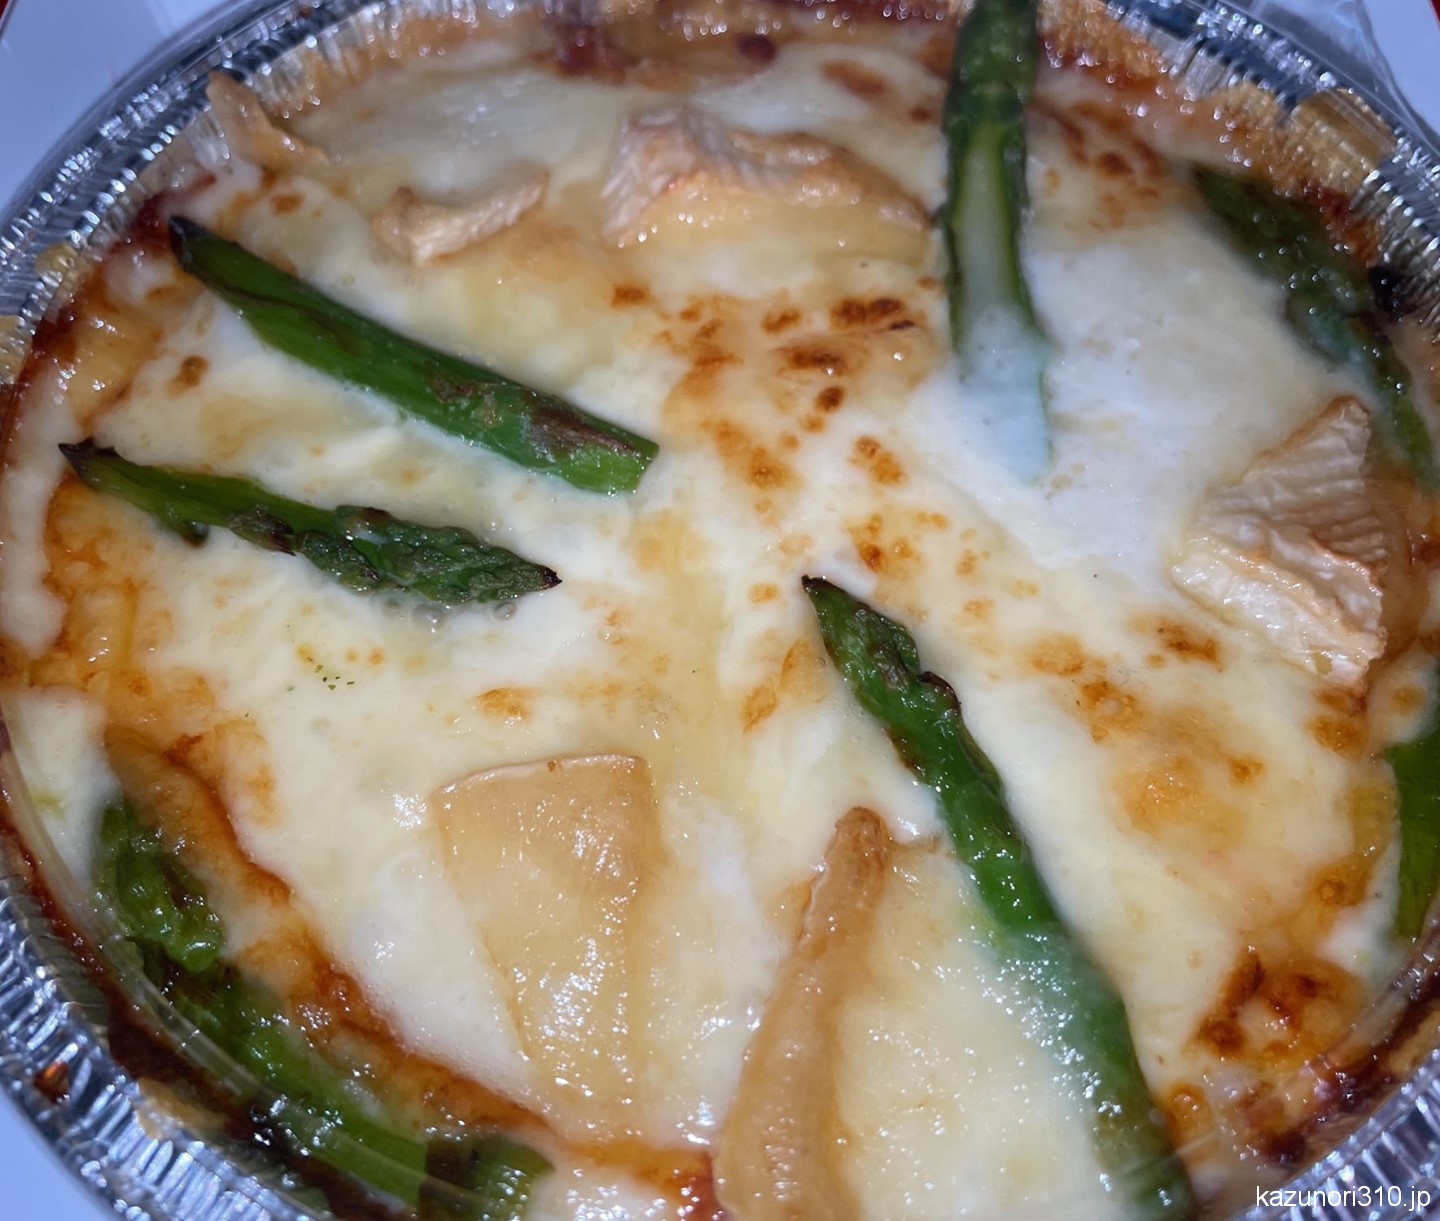 #ピザライスボウル #ドミノピザ #北海道3チーズ お焦げが少なくボリュームがあるドリアかな。